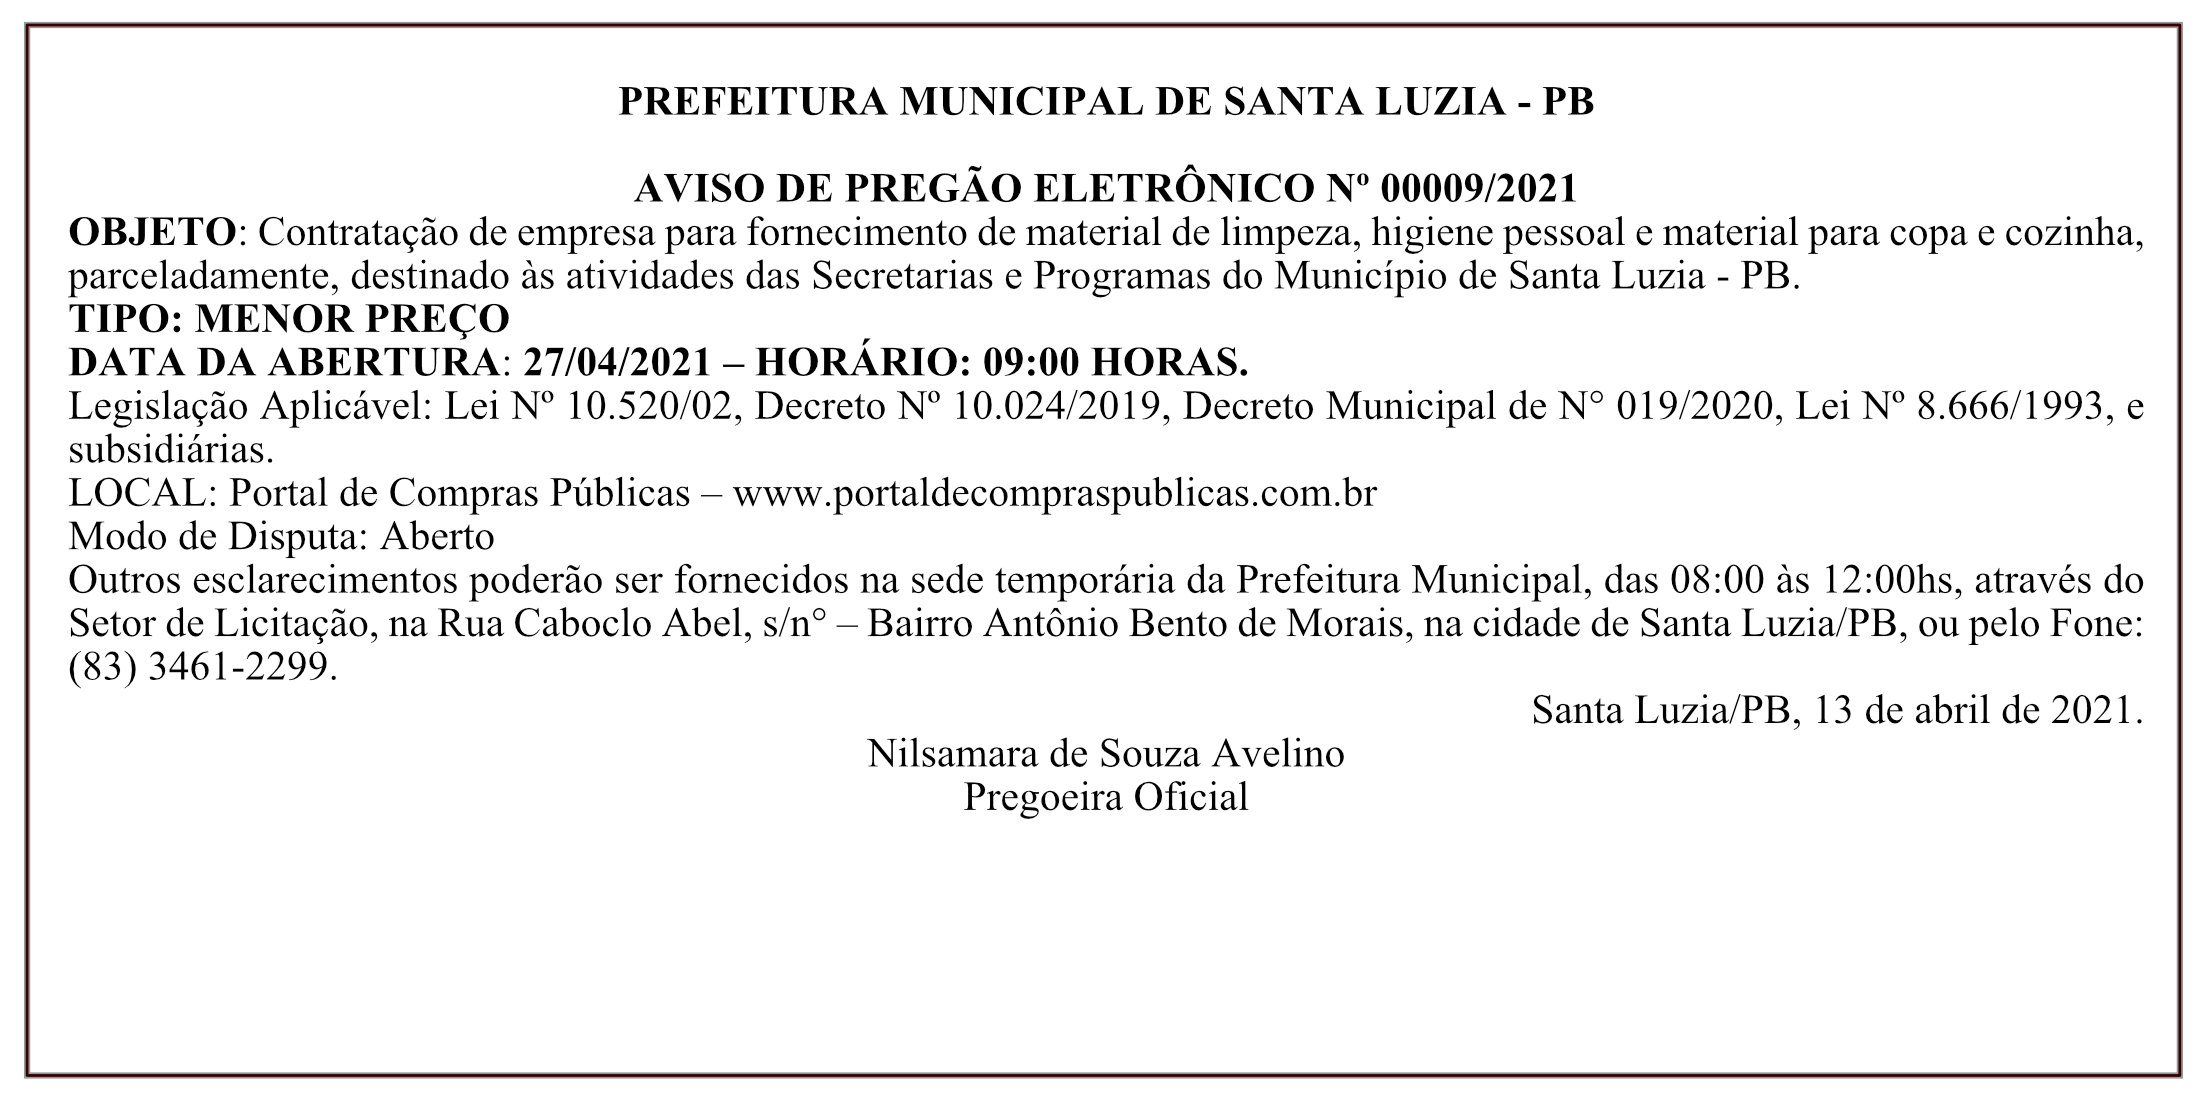 PREFEITURA MUNICIPAL DE SANTA LUZIA – AVISO DE PREGÃO ELETRÔNICO Nº 00009/2021